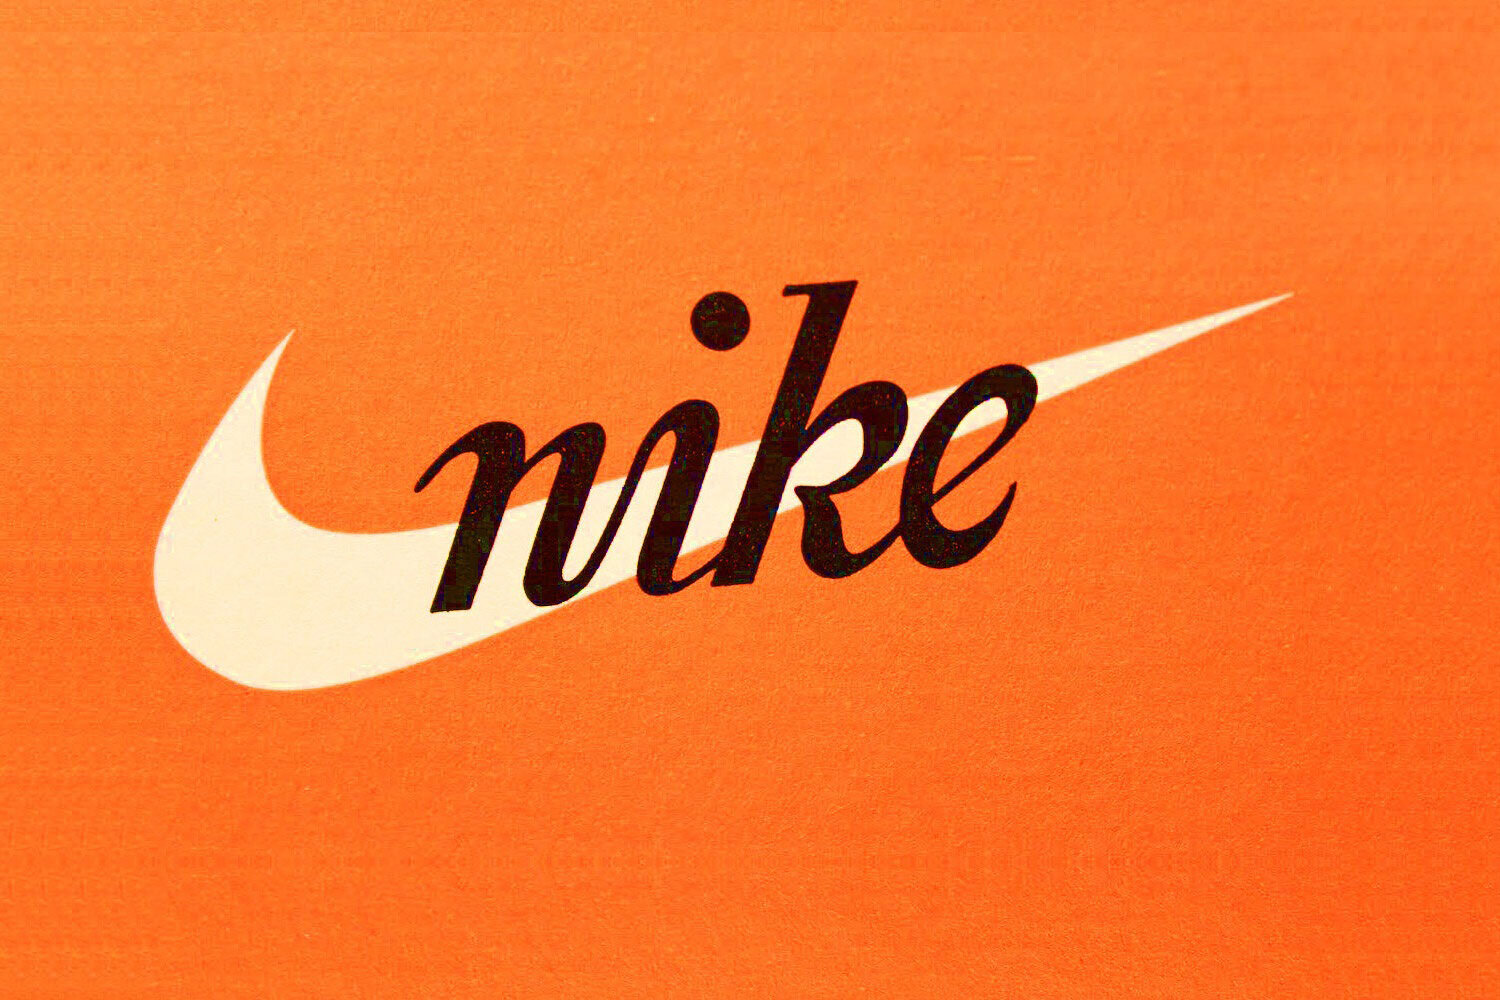 Extensamente Infantil Despedida nike vintage logo — The Deffest®. A vintage and retro sneaker blog. — Blog